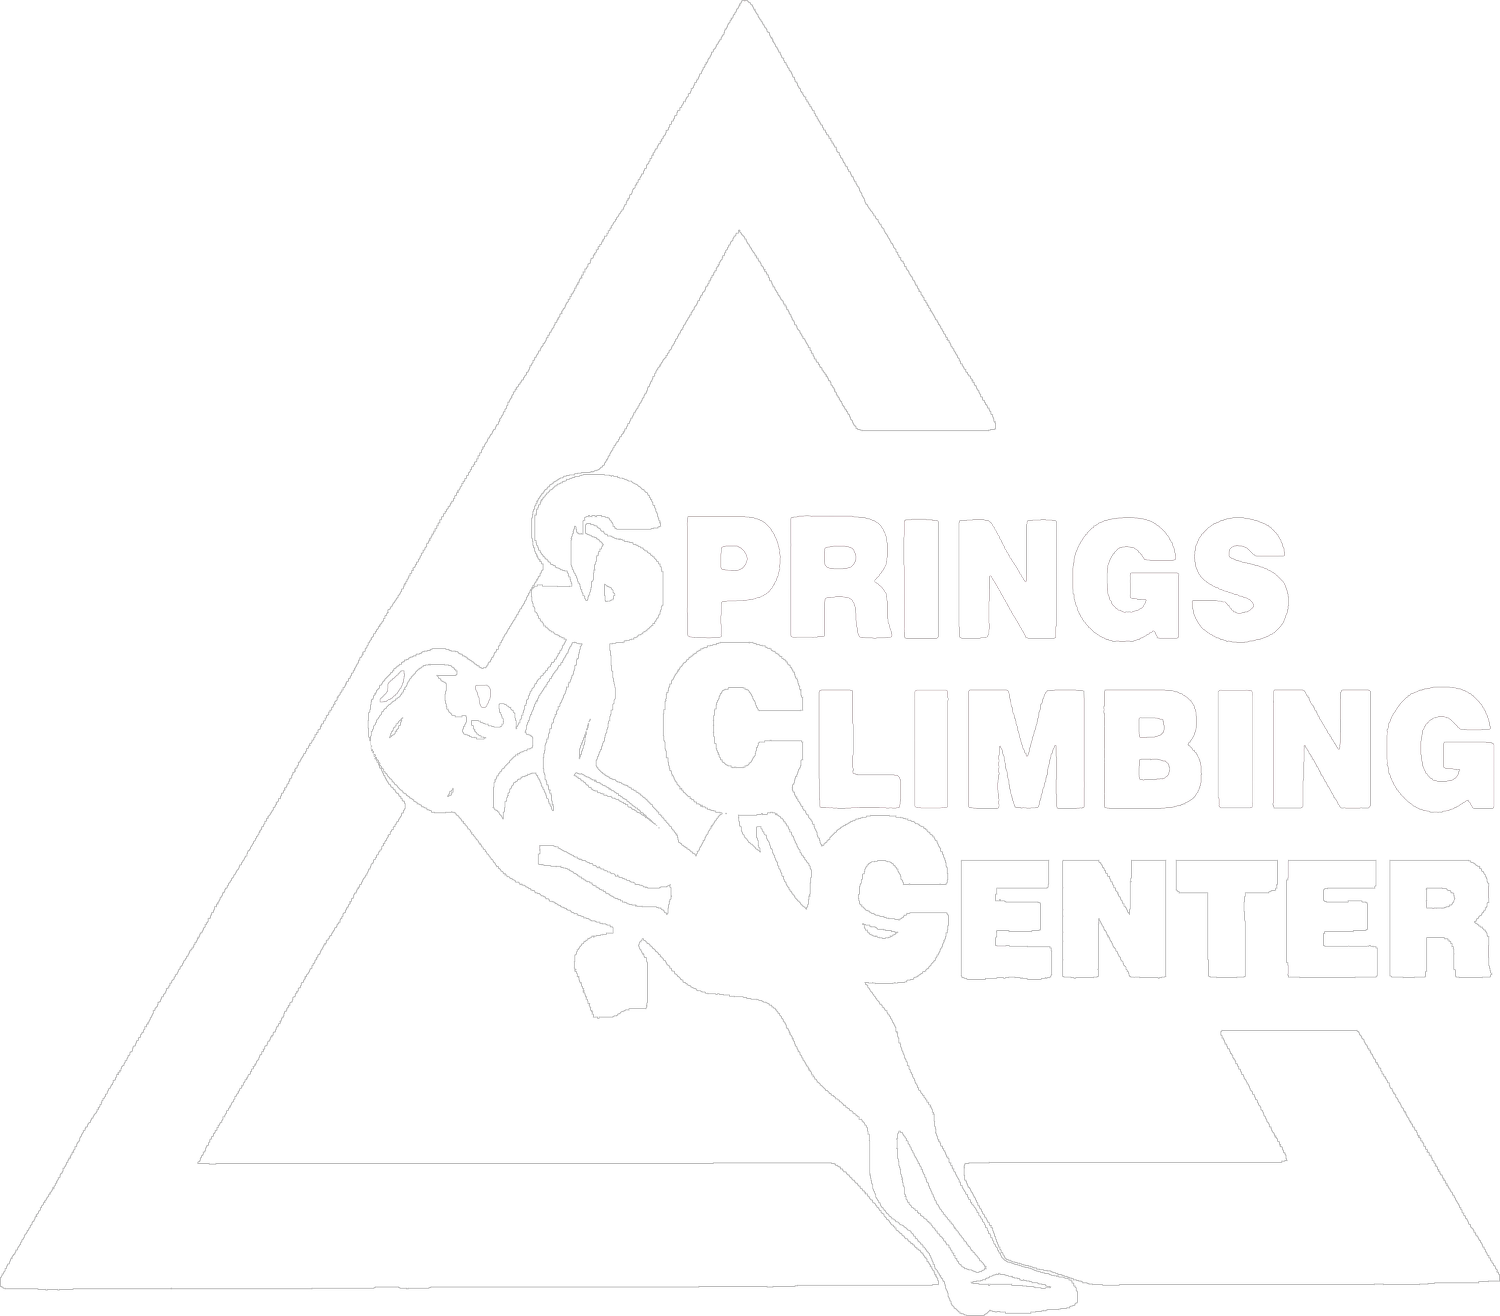 Springs Climbing Center